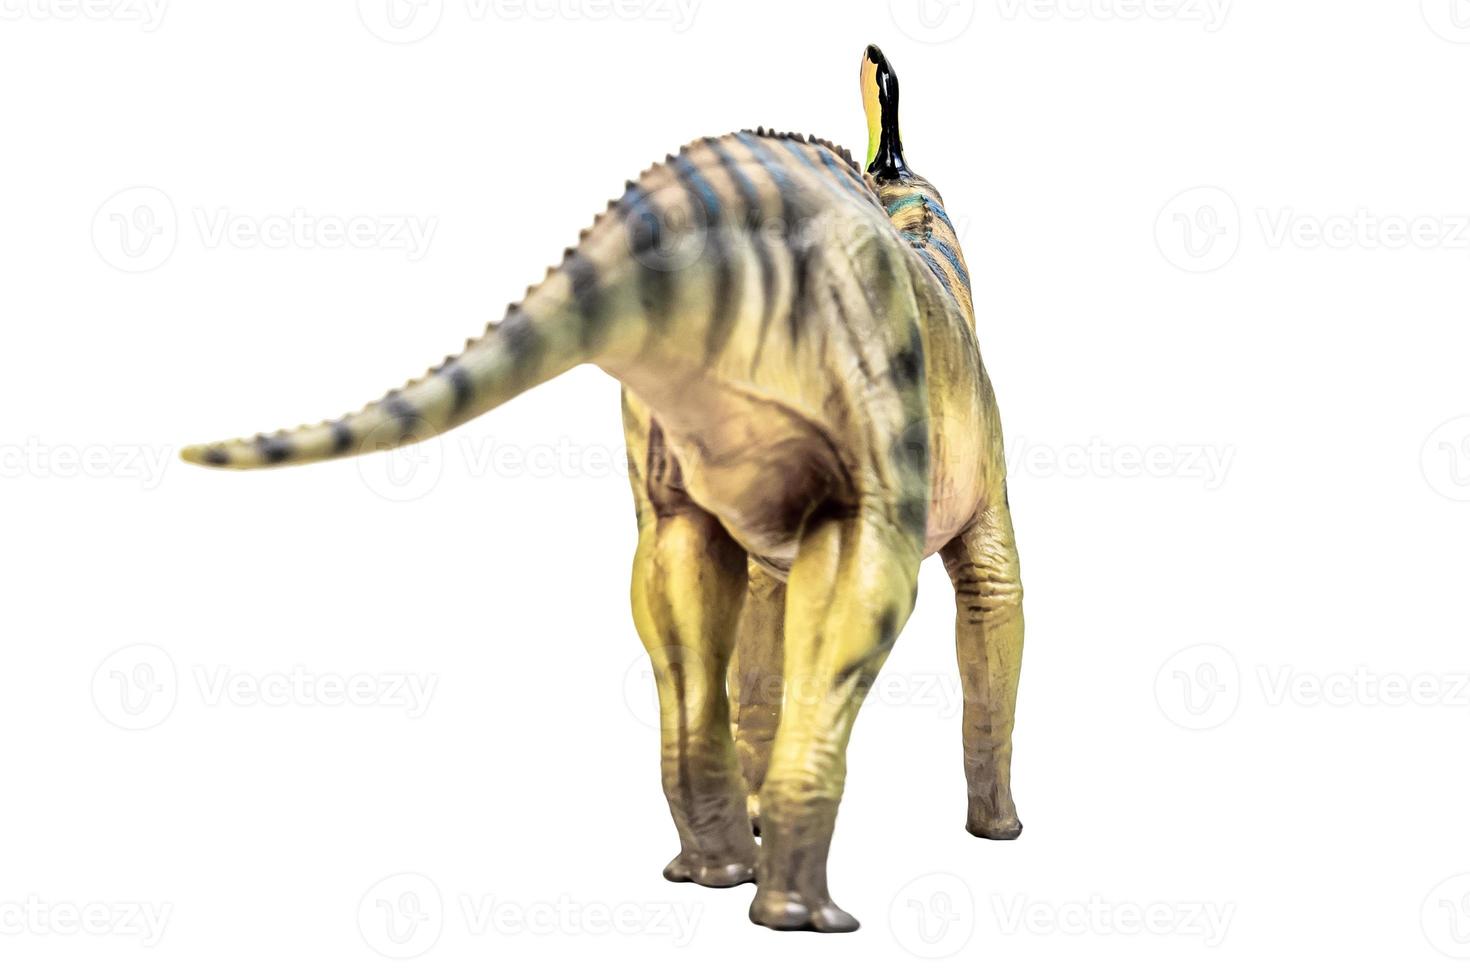 tsintaosaurus spinorhinus dinosaurus Aan wit isoleren achtergrond knipsel pad foto